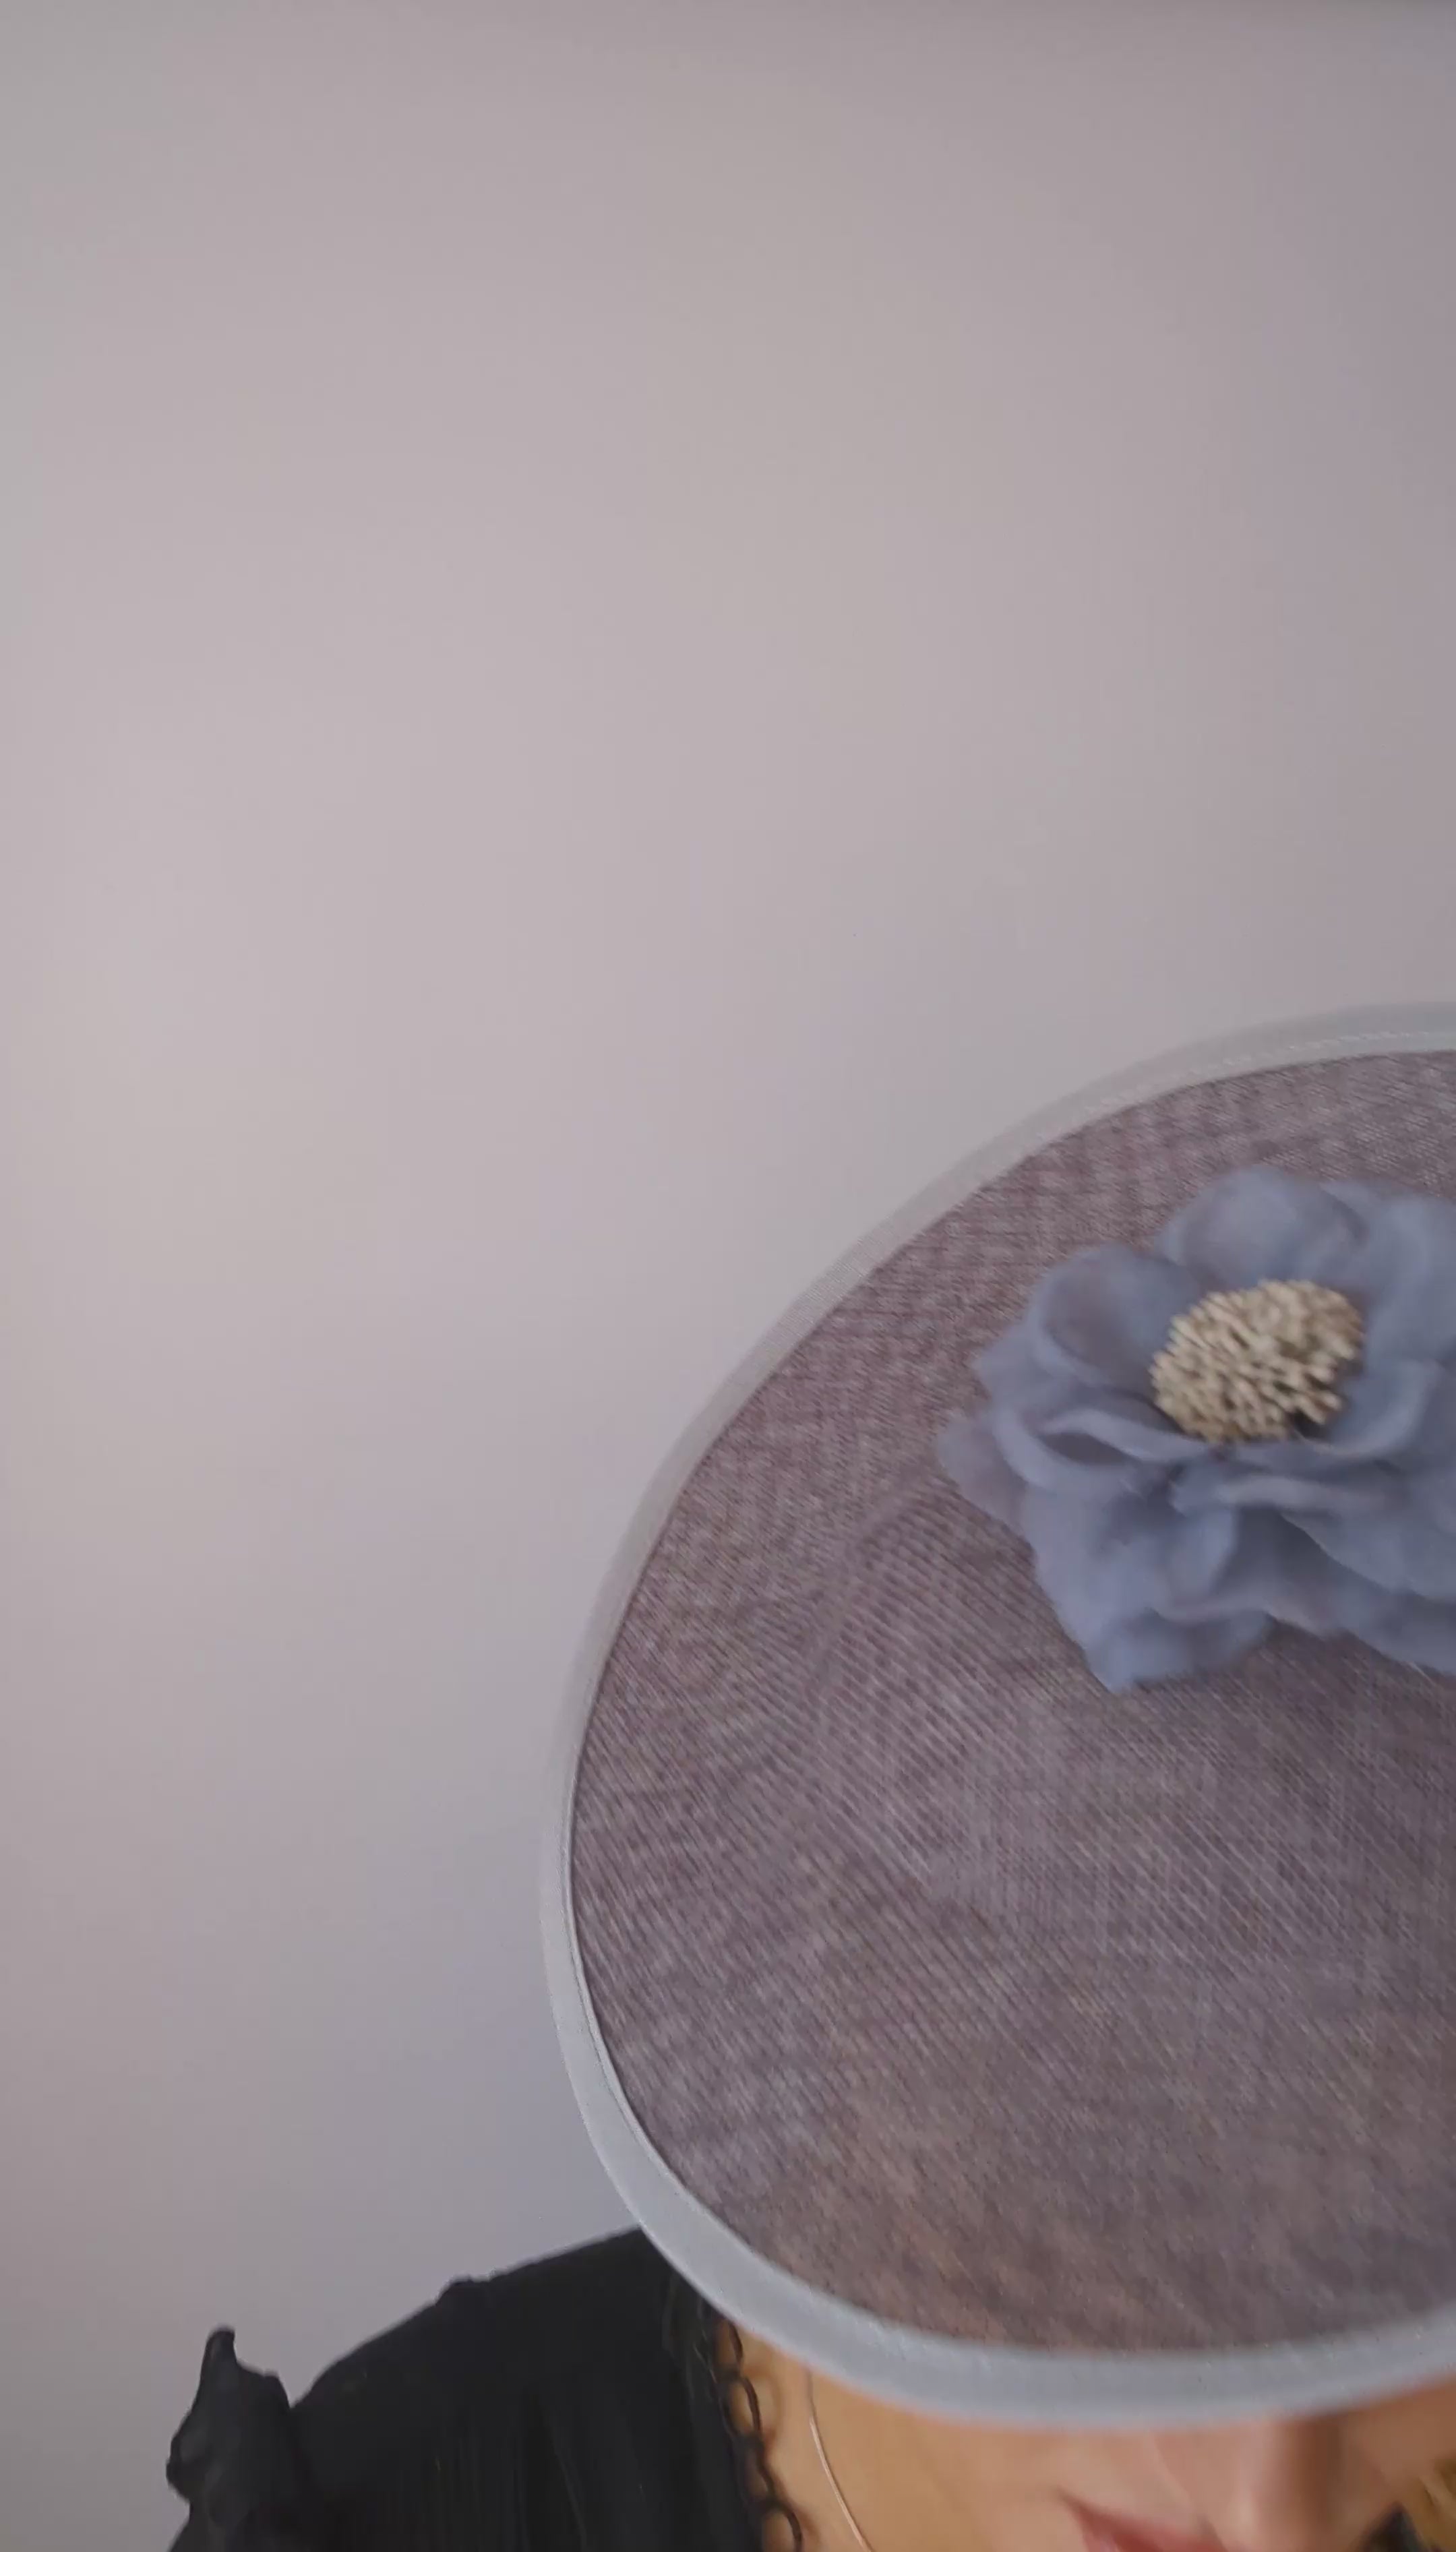 Grey large flower saucer disc fascinator hat